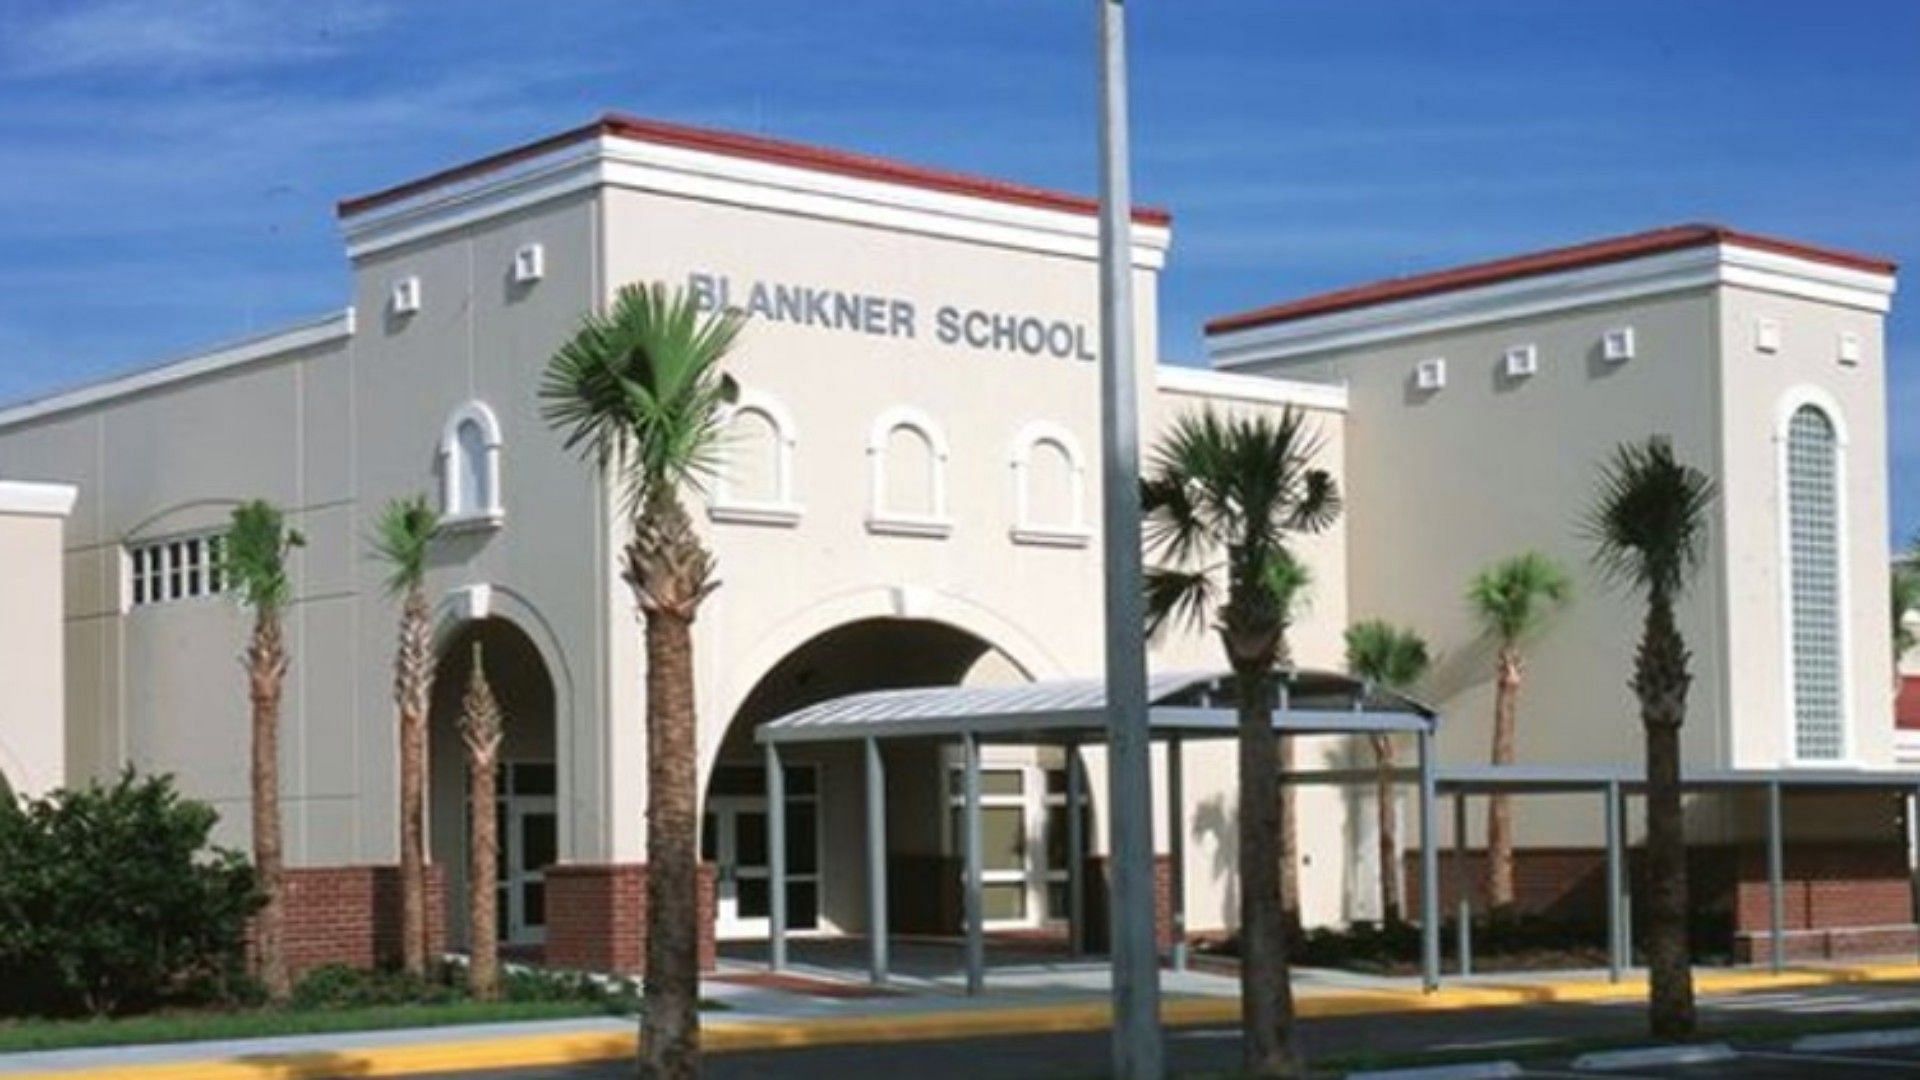 Blankner School (Image via Blankner K8 school/X)